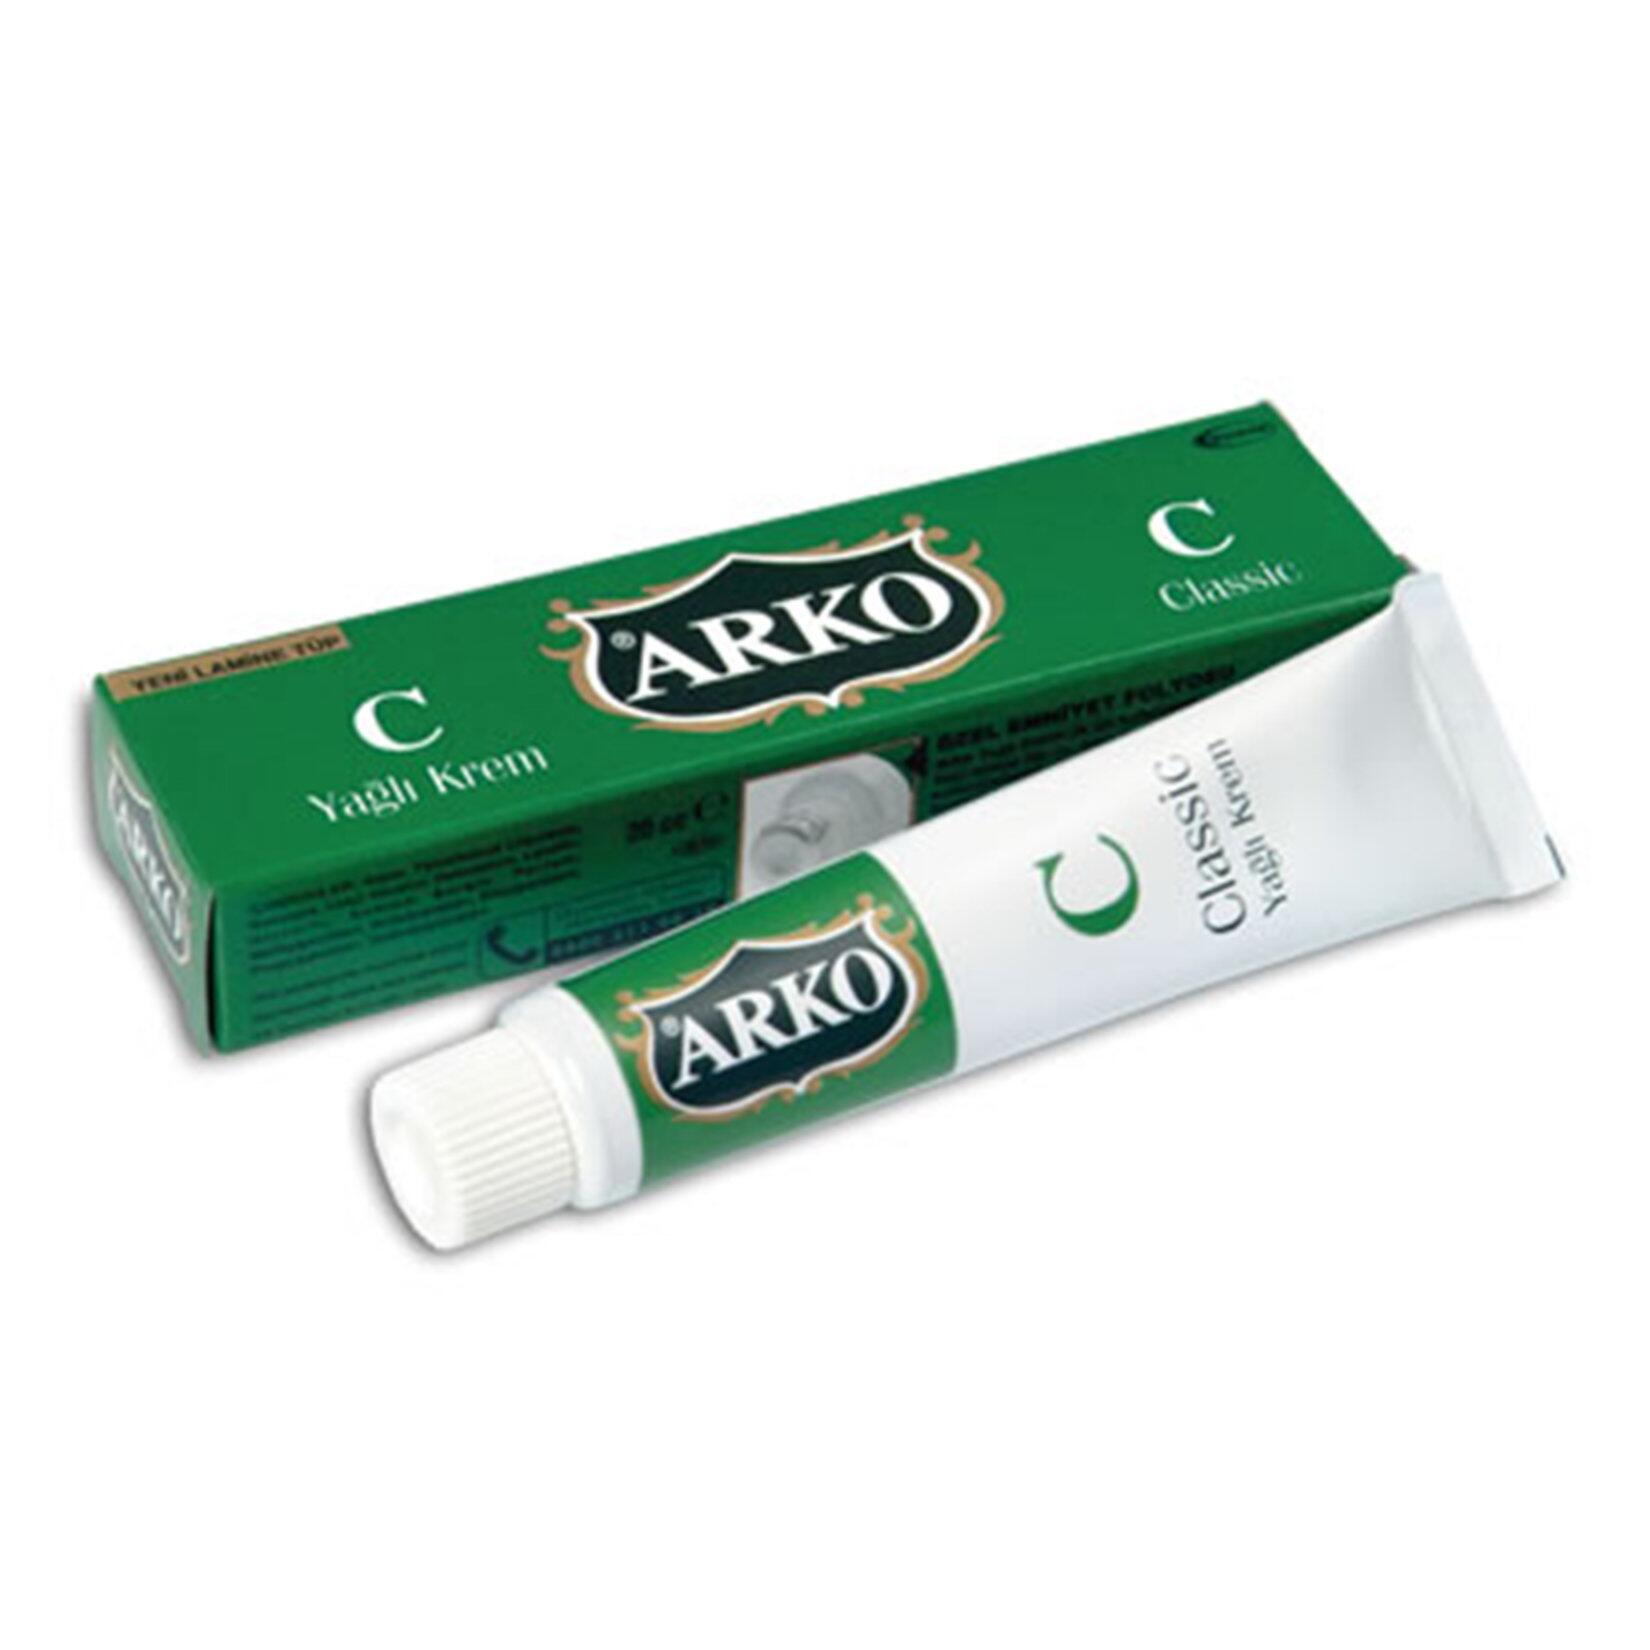 Arko Classic Yağlı Tüp Krem 20 ml